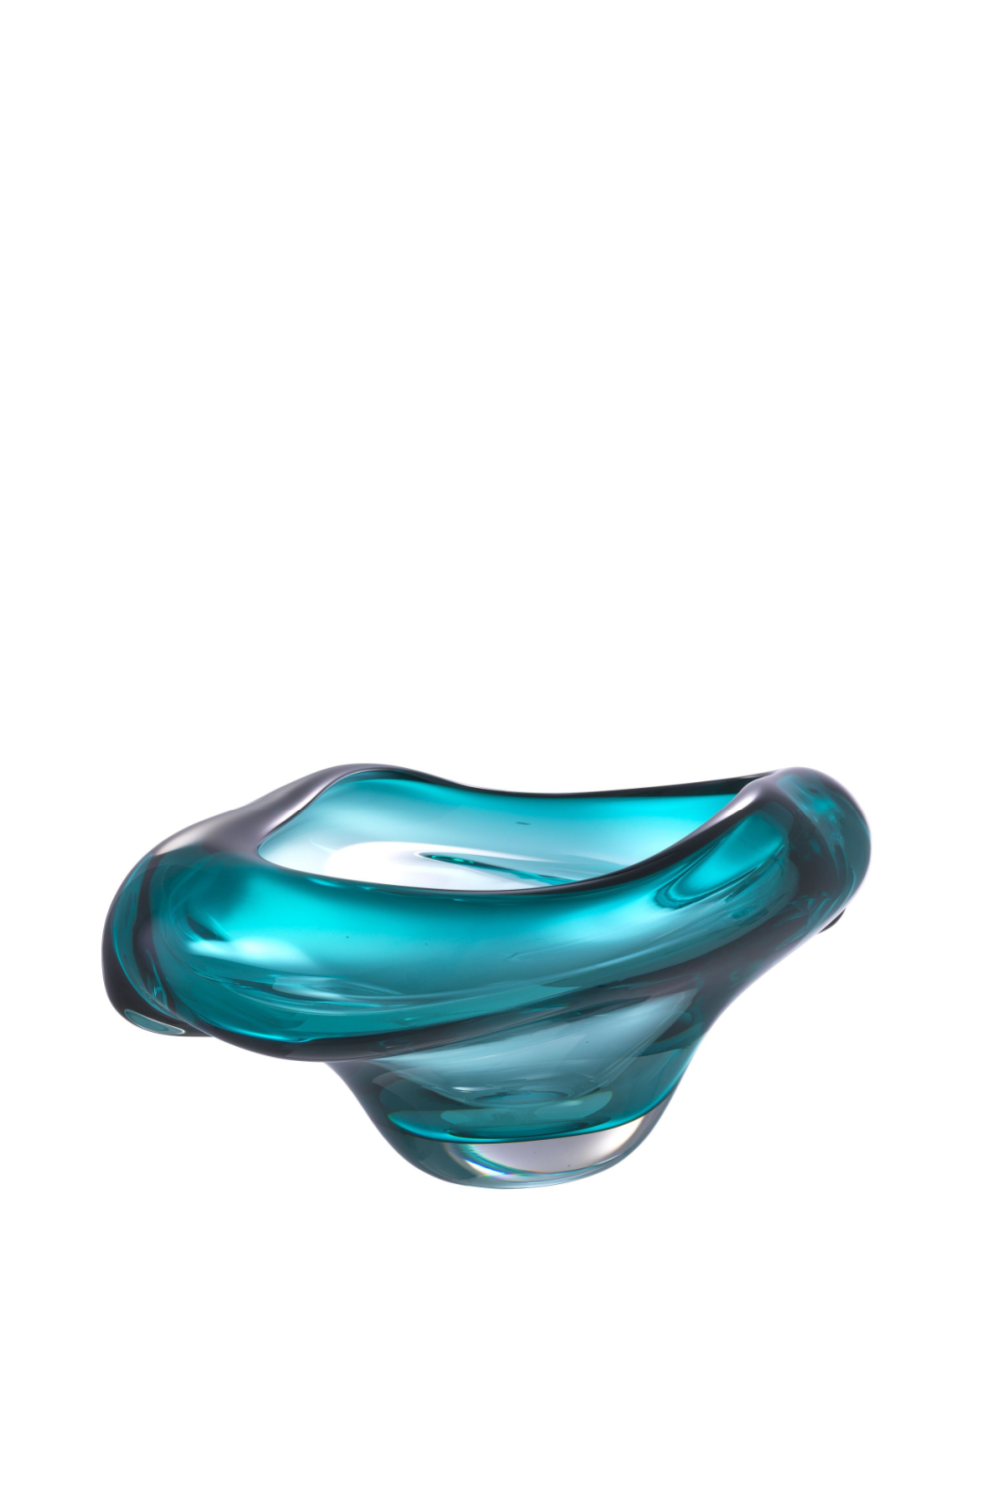 Turquoise Handblown Glass Bowl | Eichholtz Darius | OROA